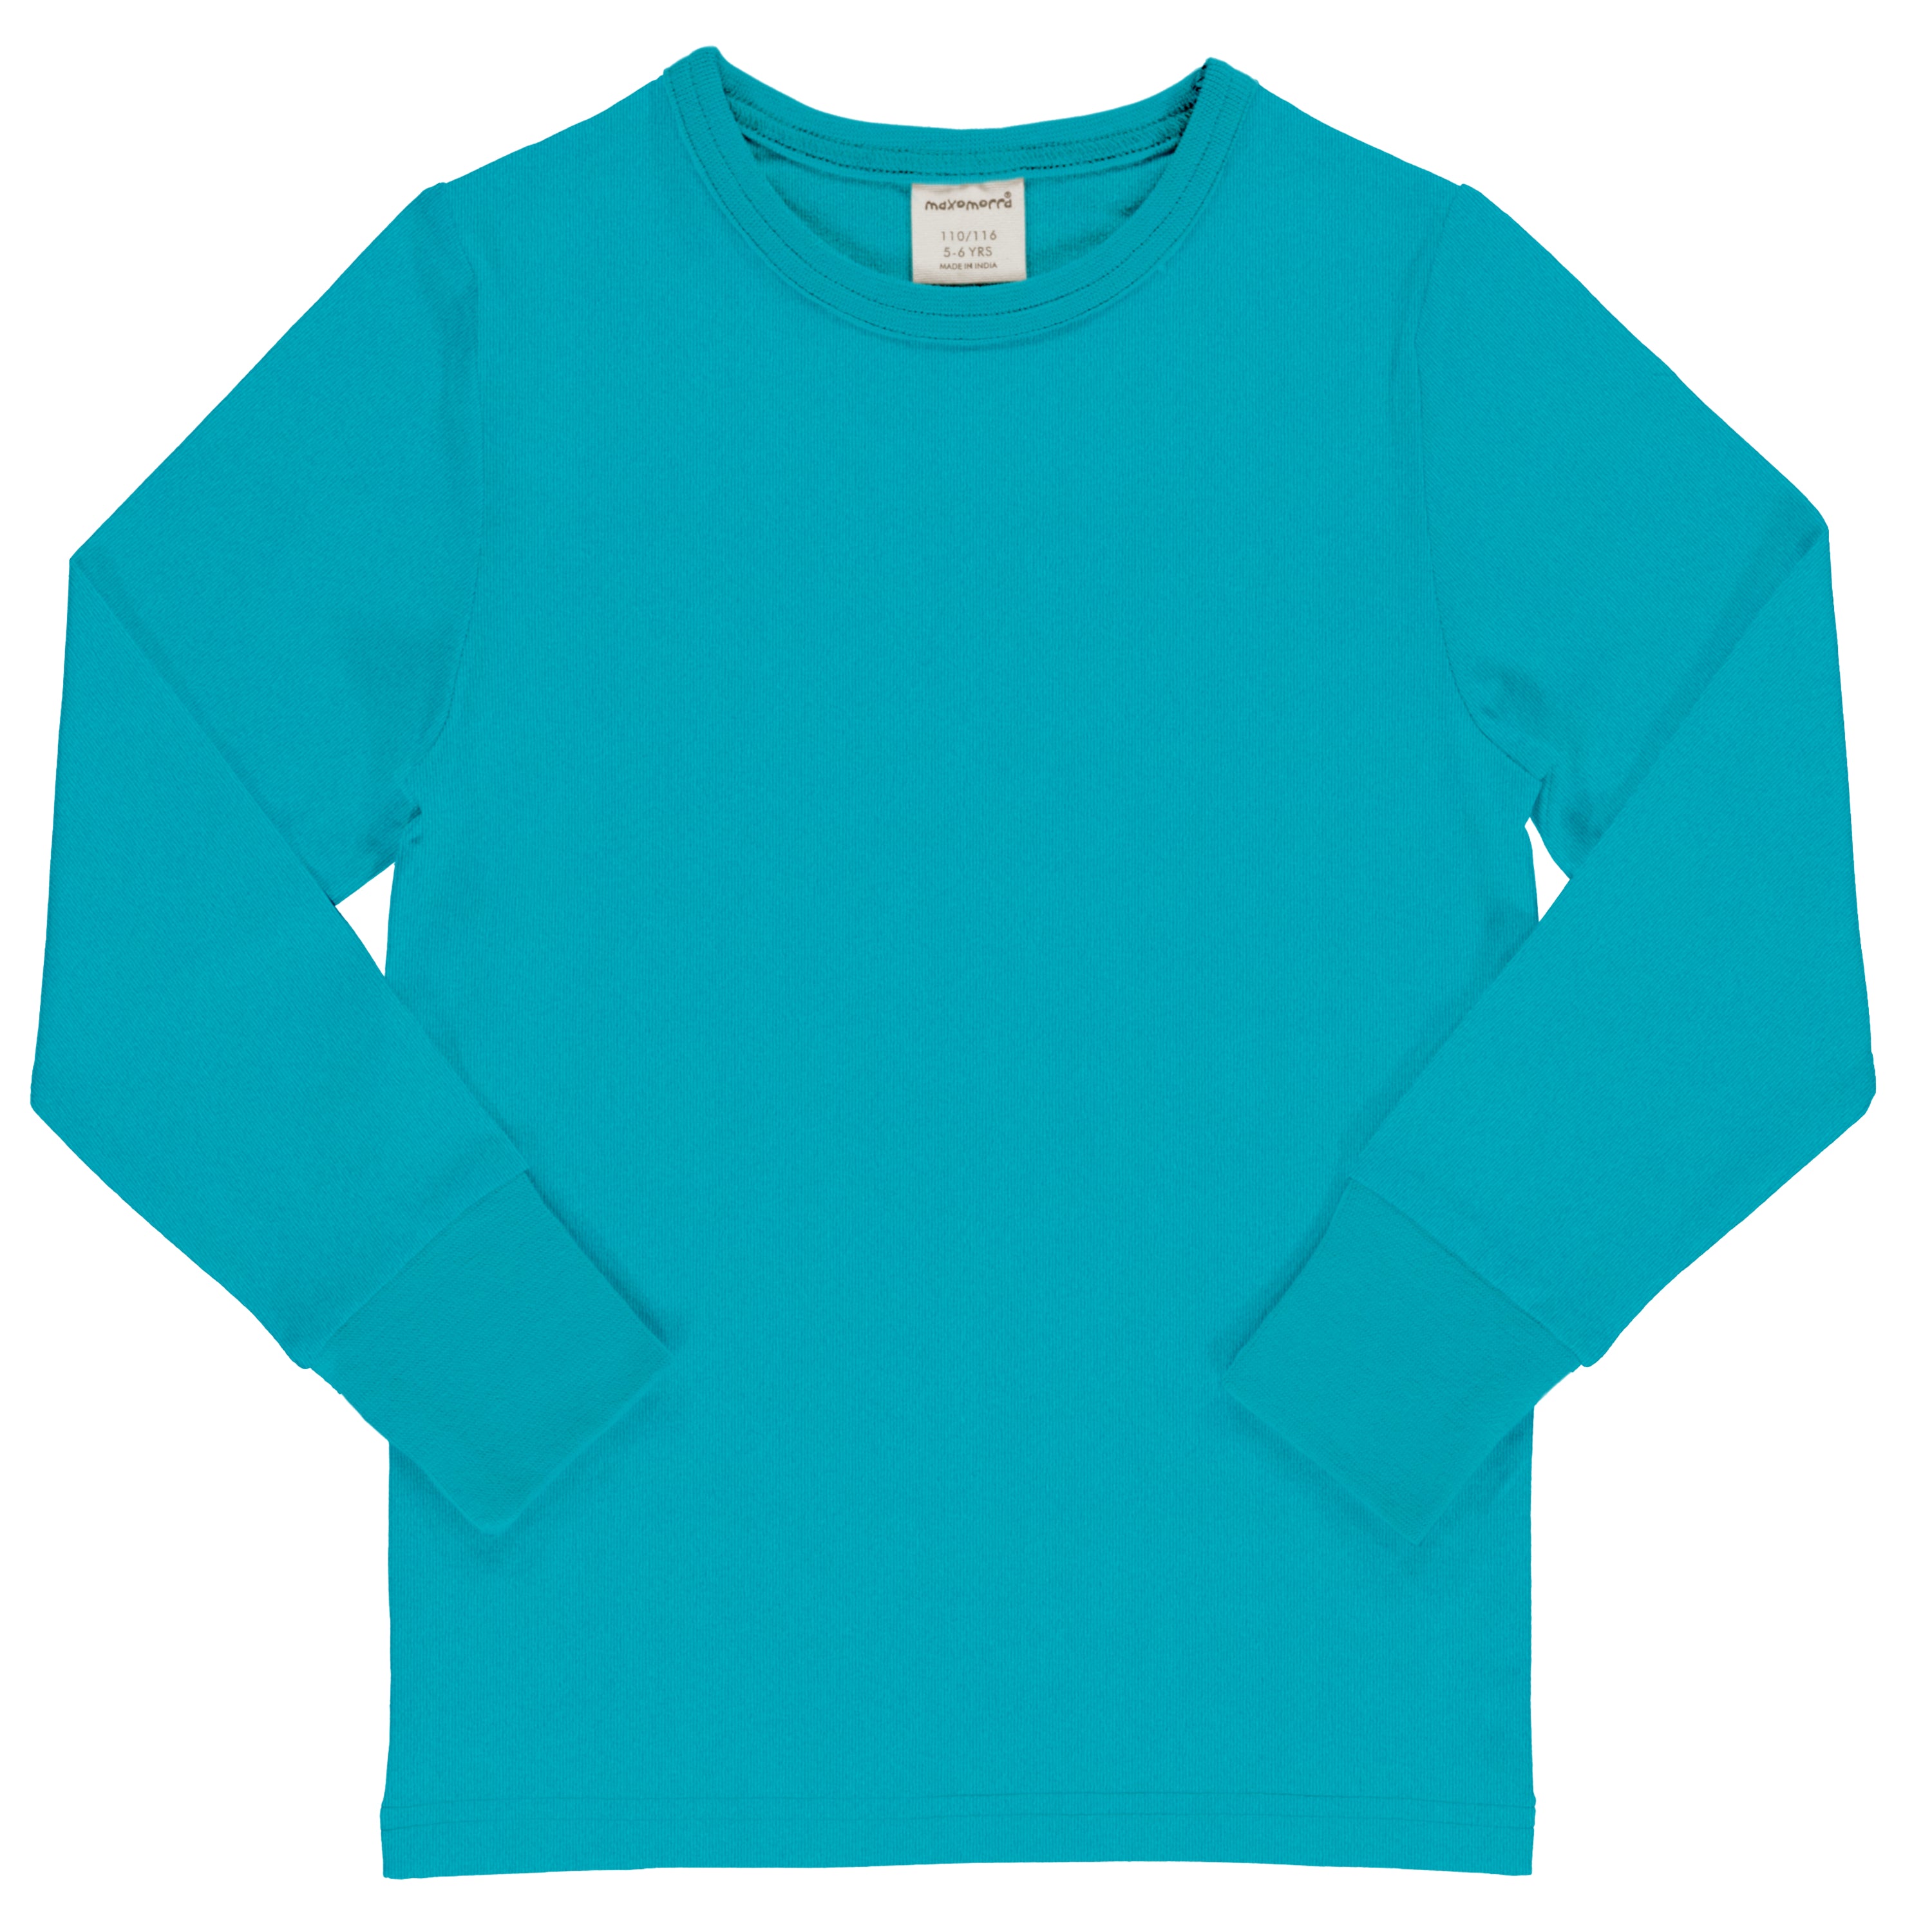 Children's & Adult's Turquoise Long Sleeved T-Shirt - Maxomorra